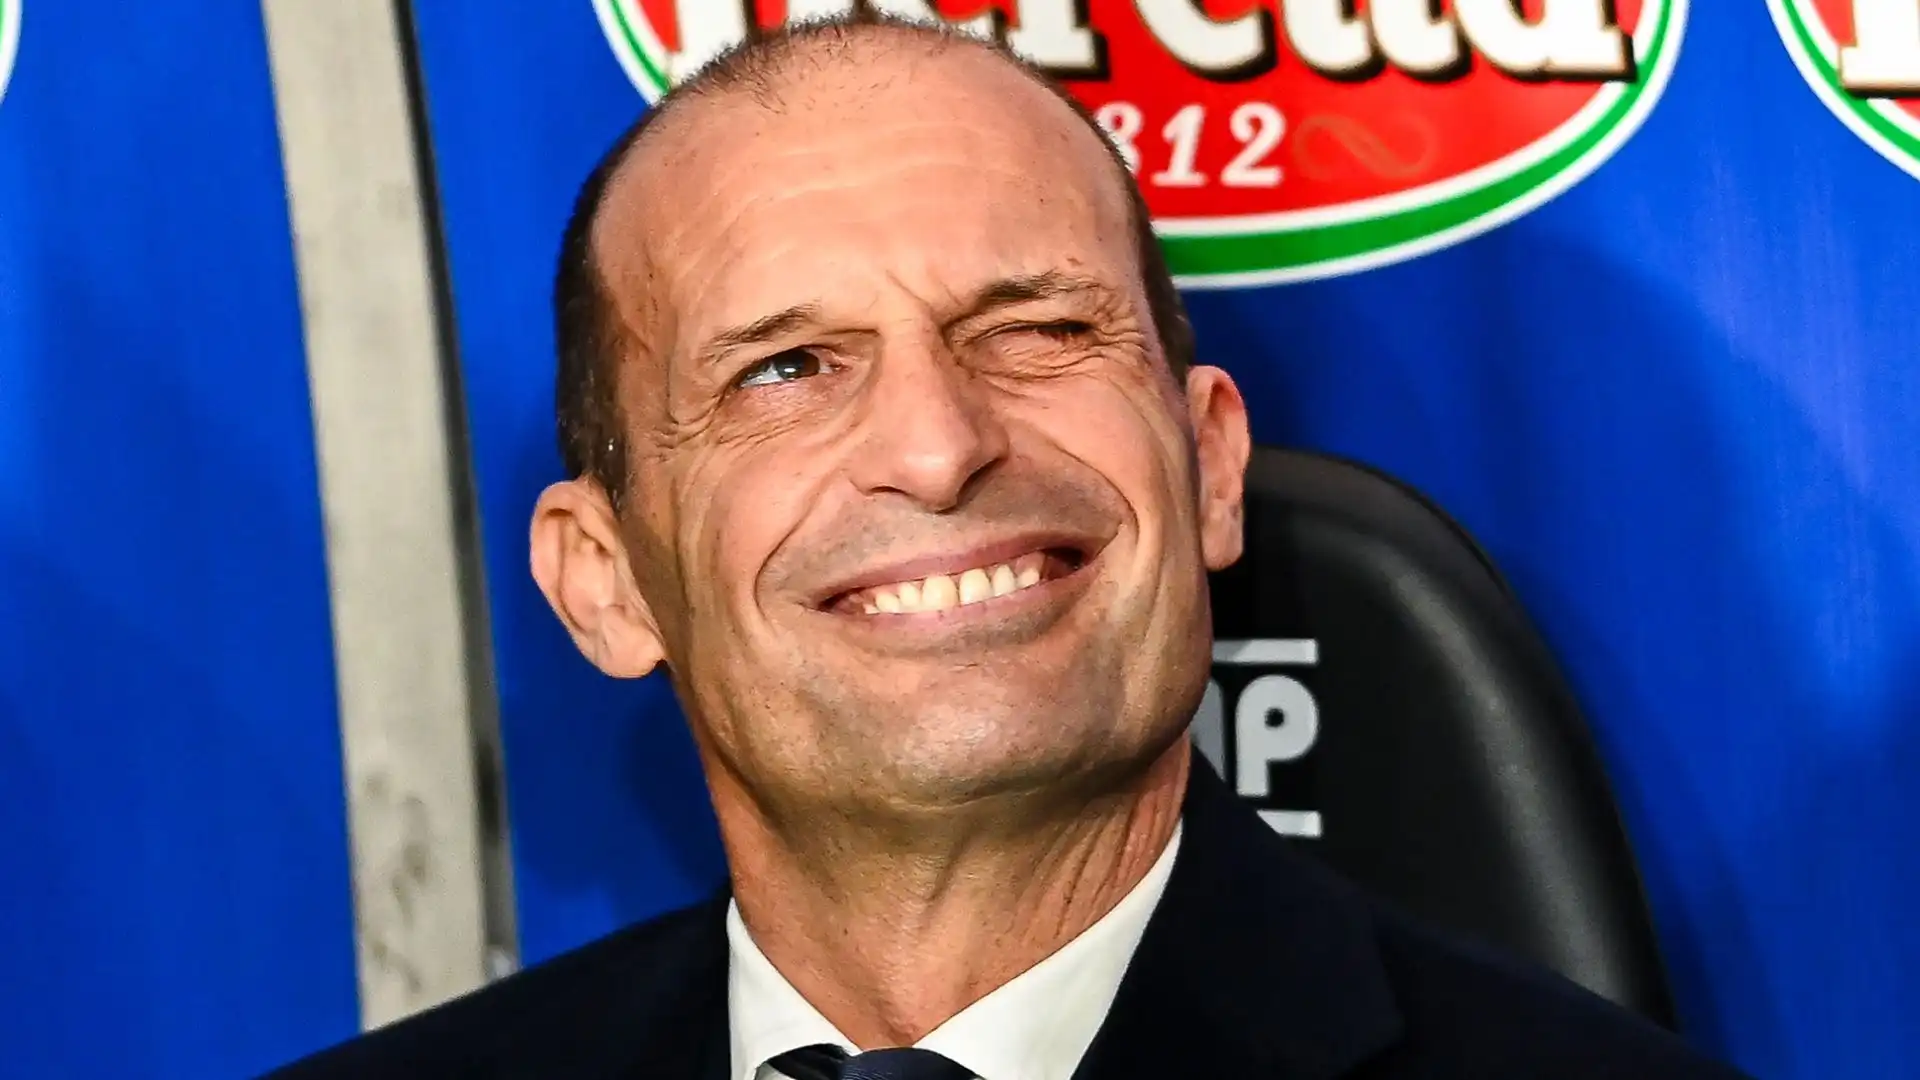 Allegri è tornato a guidare la Juventus nel 2021, dopo il quinquennio 2014-2019